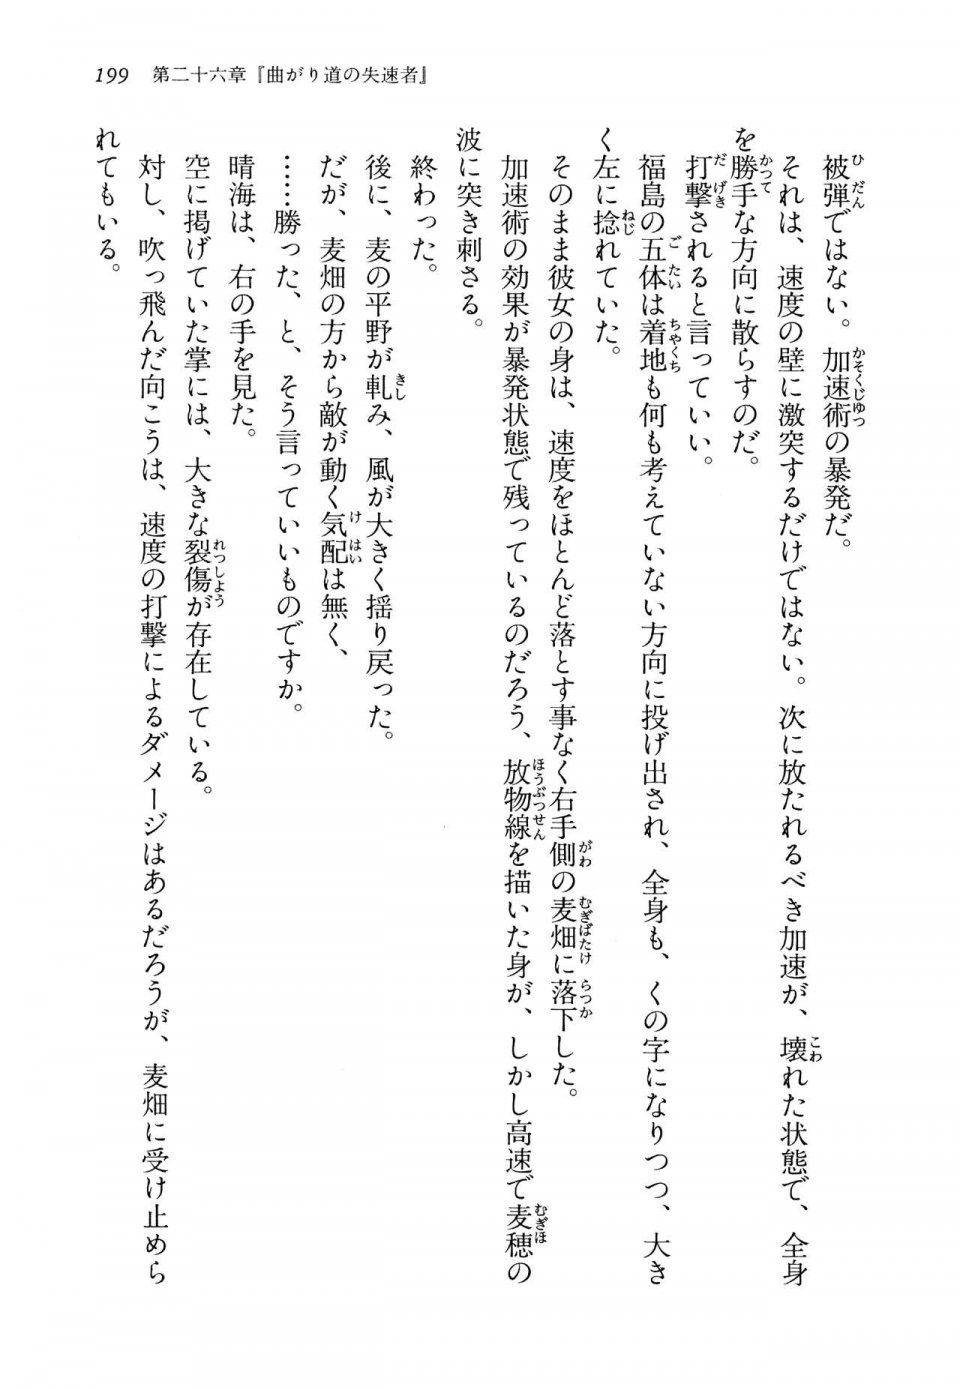 Kyoukai Senjou no Horizon LN Vol 14(6B) - Photo #199